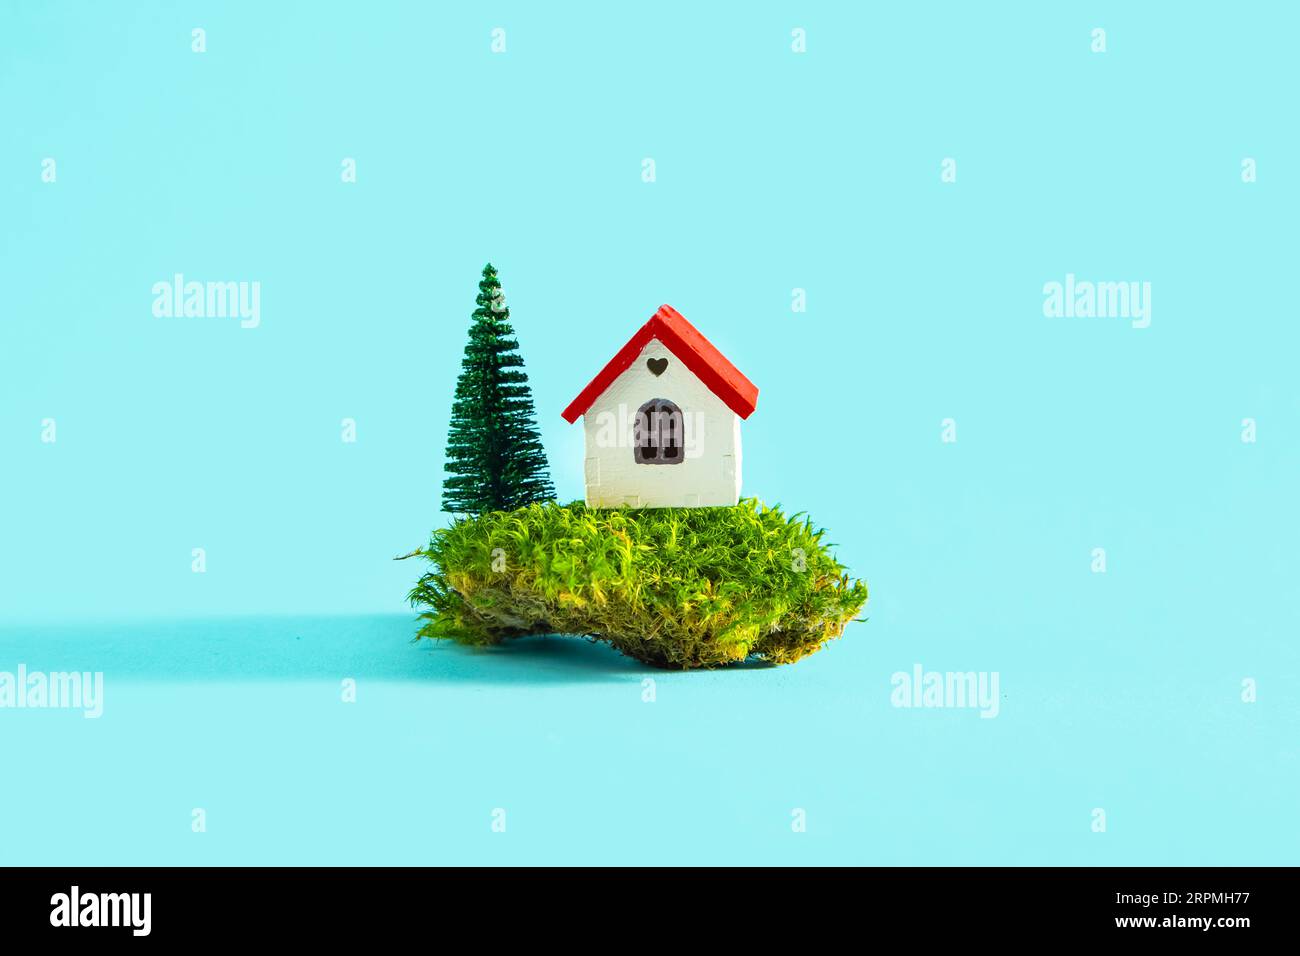 Modèle de maison avec verdure sur fond bleu. Le concept du marché du logement, l'achat ou la location de biens immobiliers. Banque D'Images